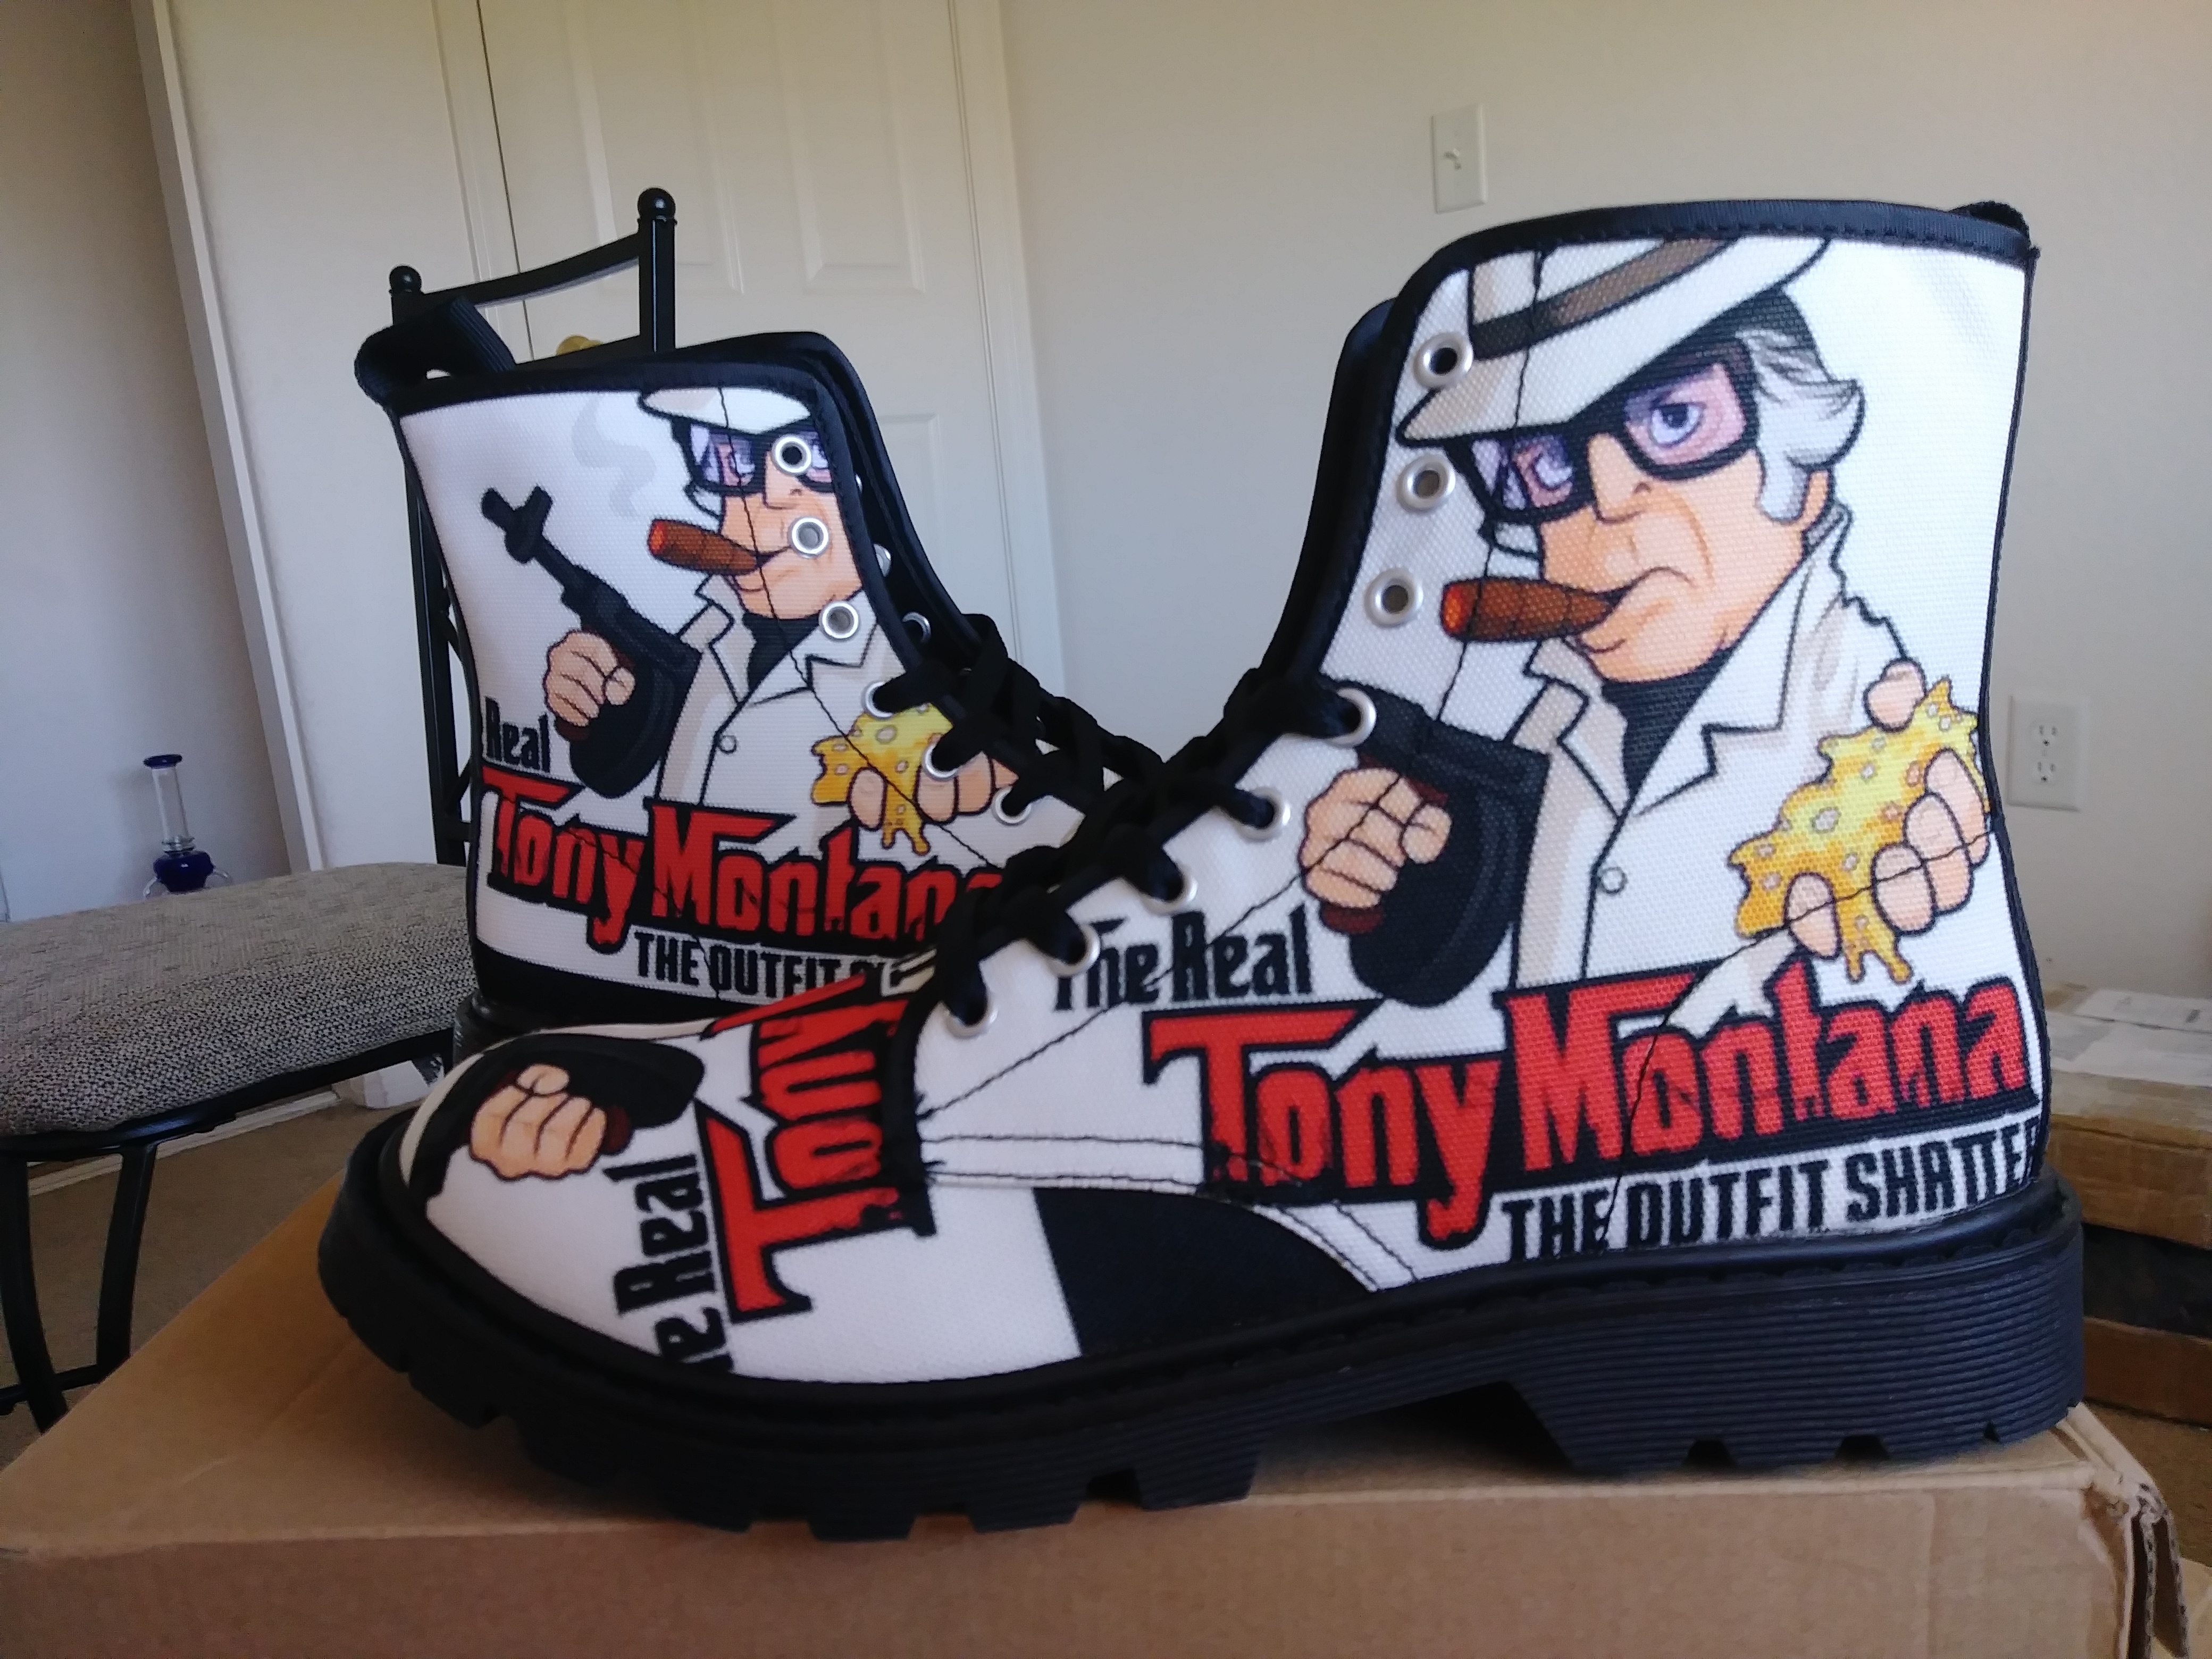 The Real Tony Montana shoes